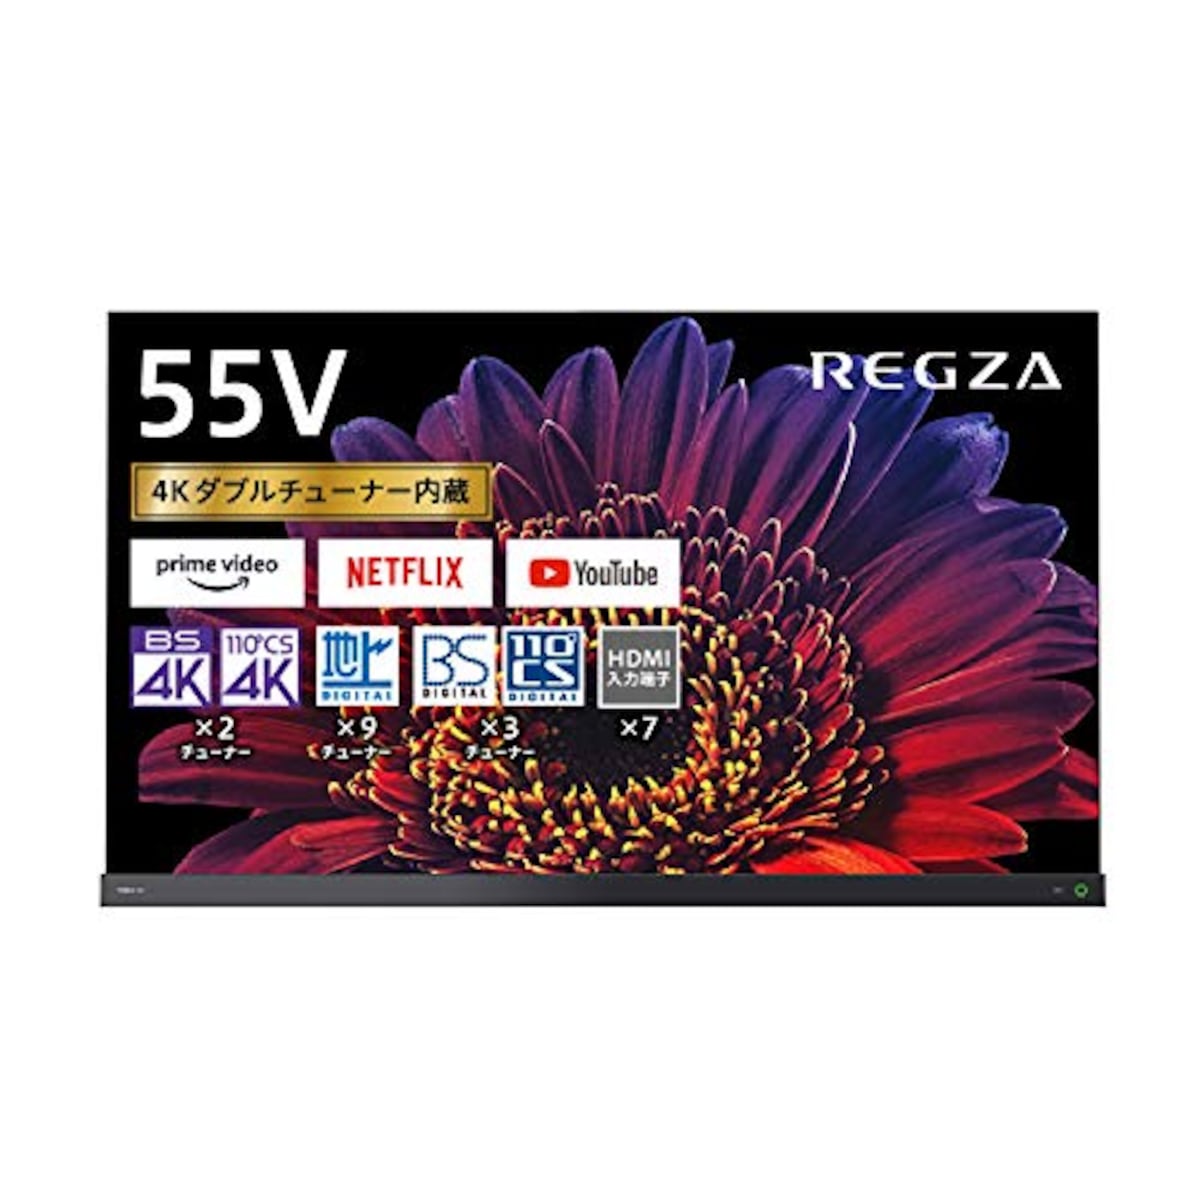 55V型 有機ELテレビ レグザ 55X9400 4Kチューナー内蔵